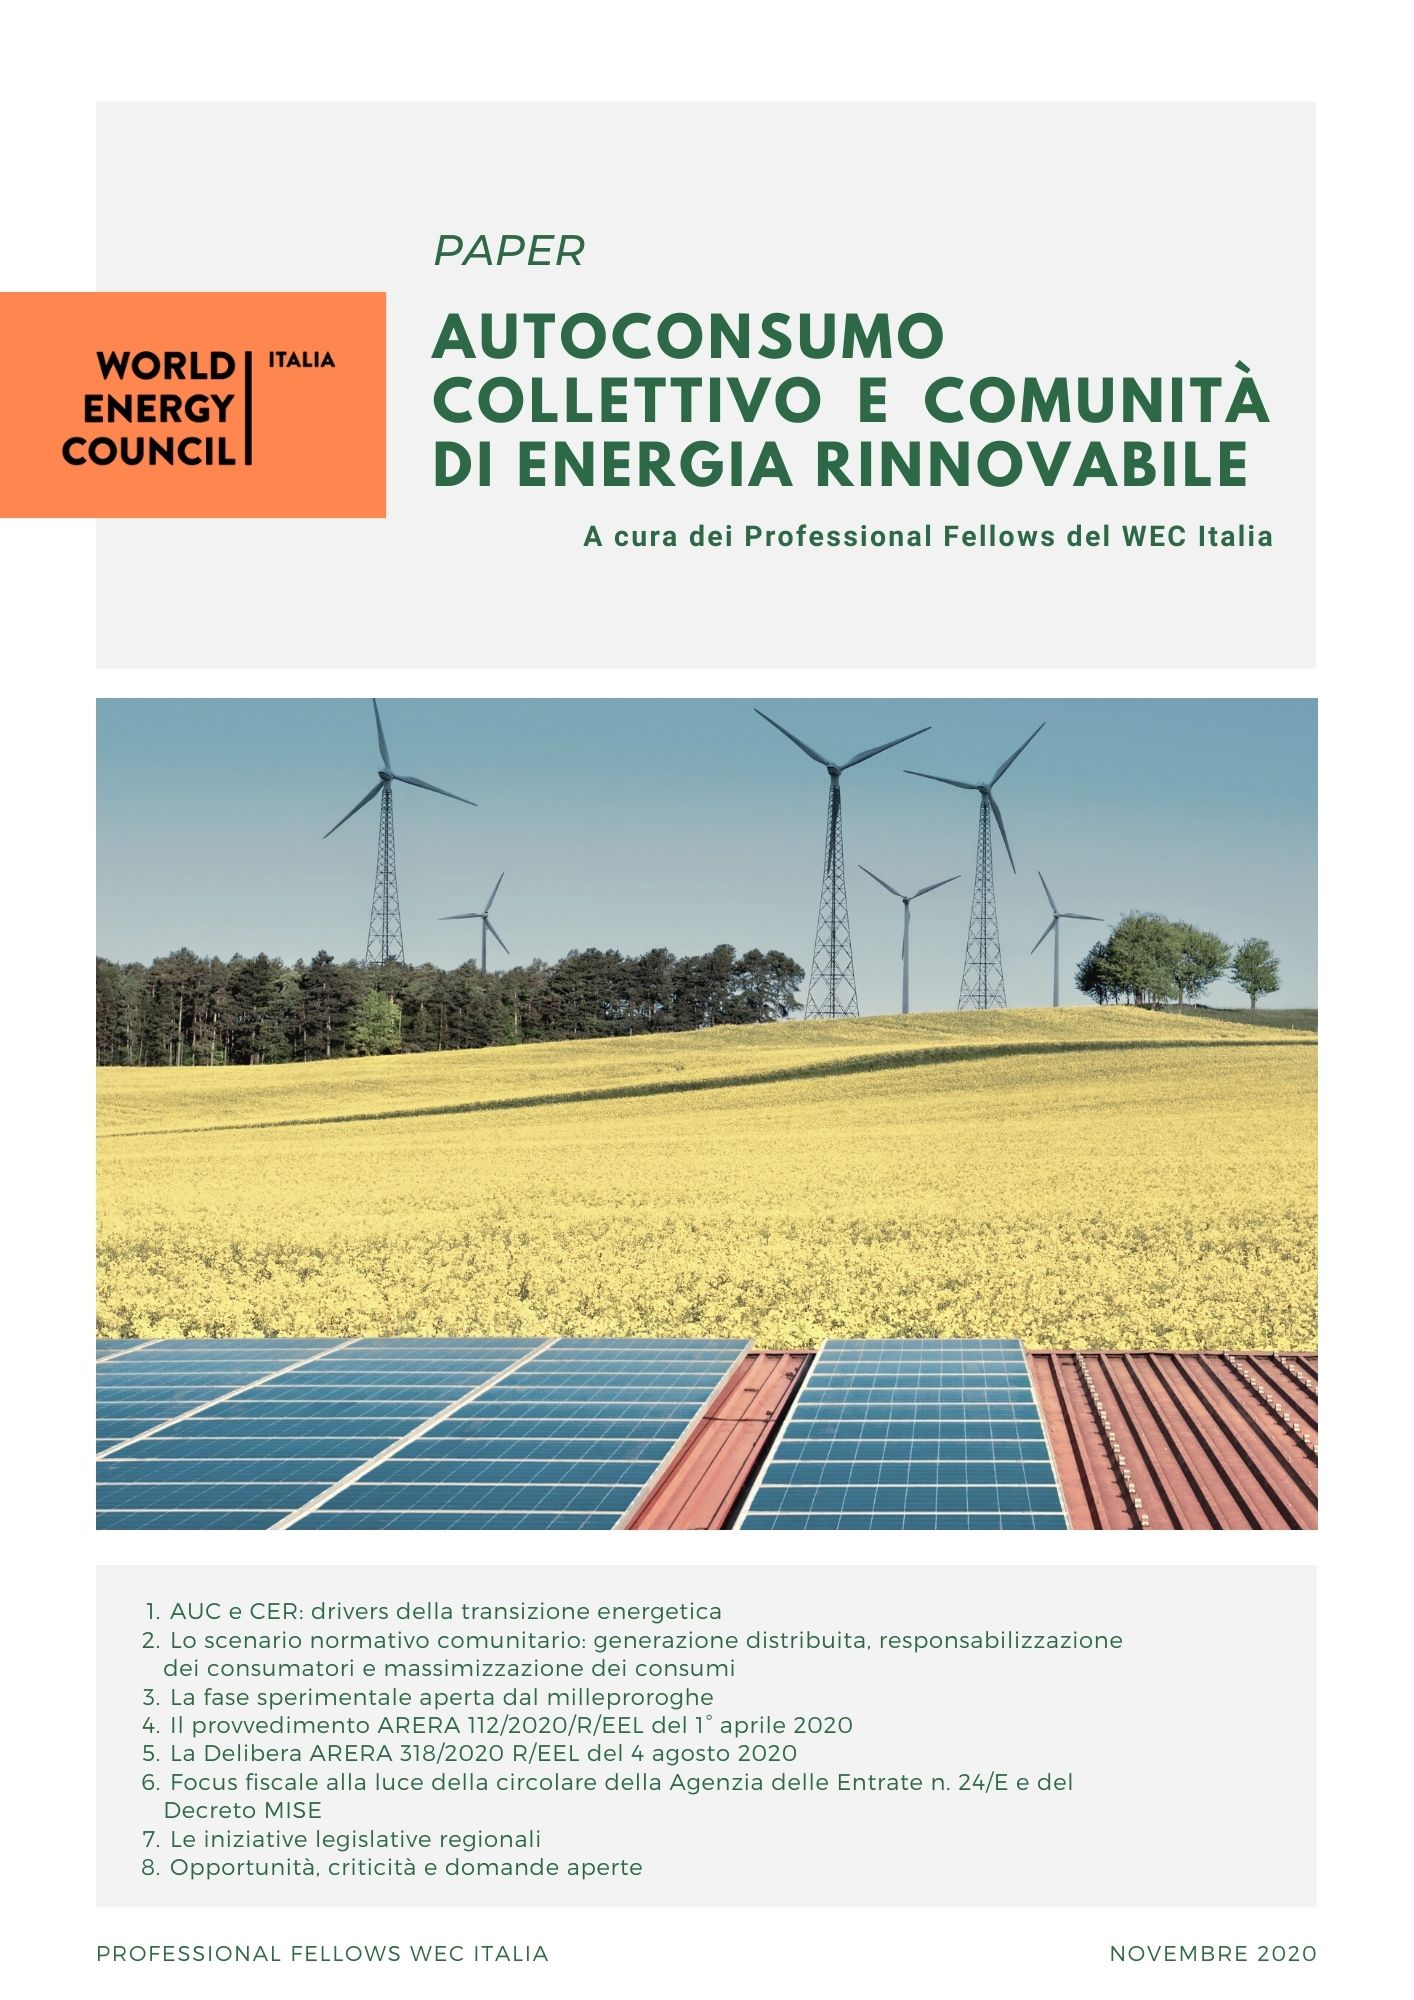 Paper "Autoconsumo collettivo e comunità di energia rinnovabile", a cura dei Professional Fellows WEC Italia
